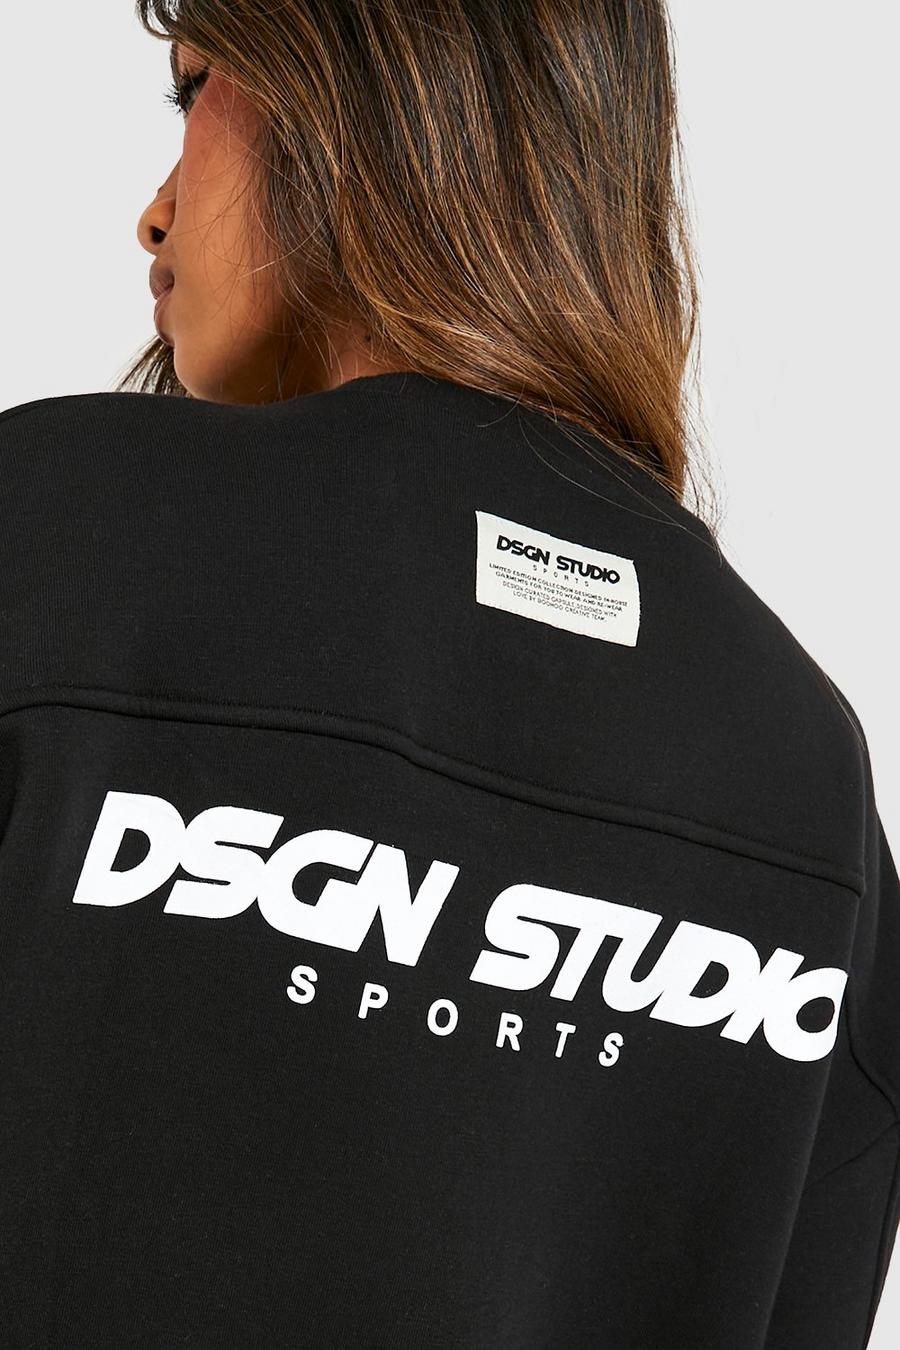 Oversize Sweatshirt mit Dsgn Studio Slogan, Black schwarz image number 1